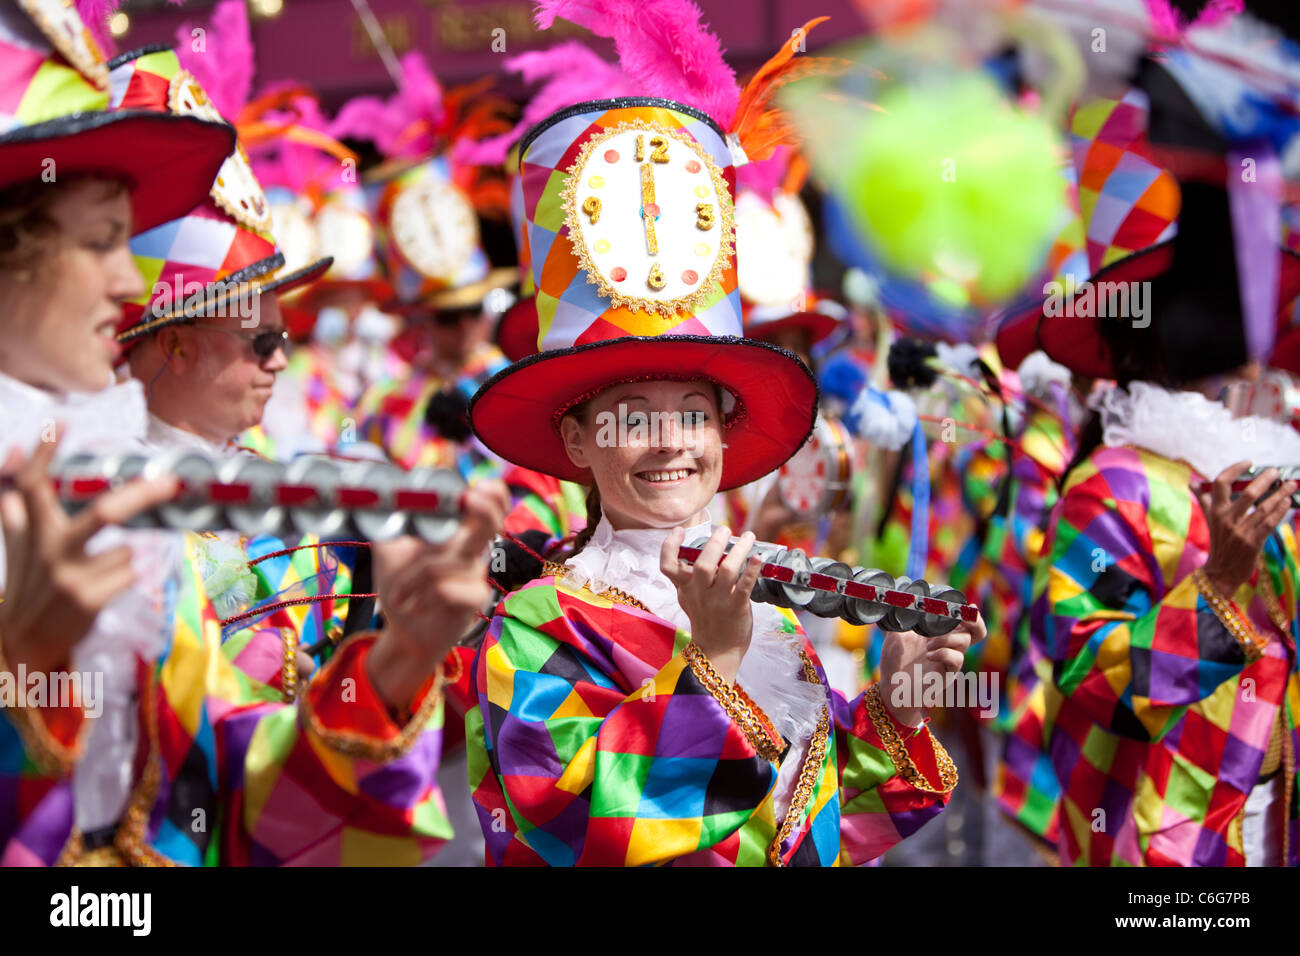 Musiciens de l'école de samba en costumes, au Notting Hill Carnival, Londres, Angleterre, Royaume-Uni. Banque D'Images